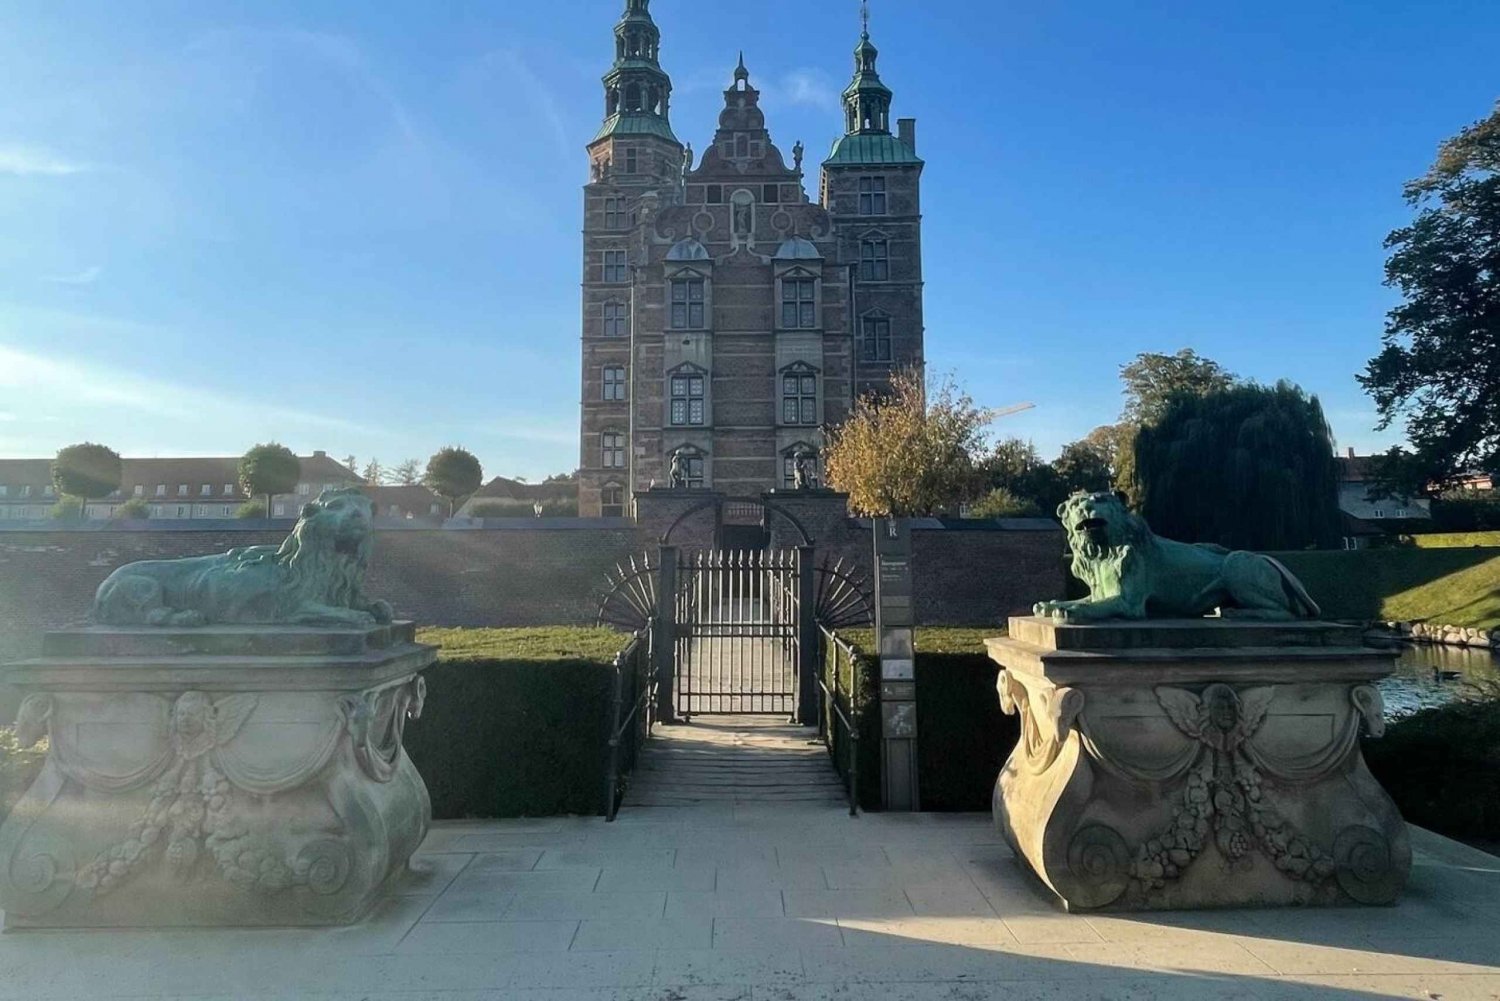 Kopenhagen: King's Garden Ontsnappingskamer voor buiten